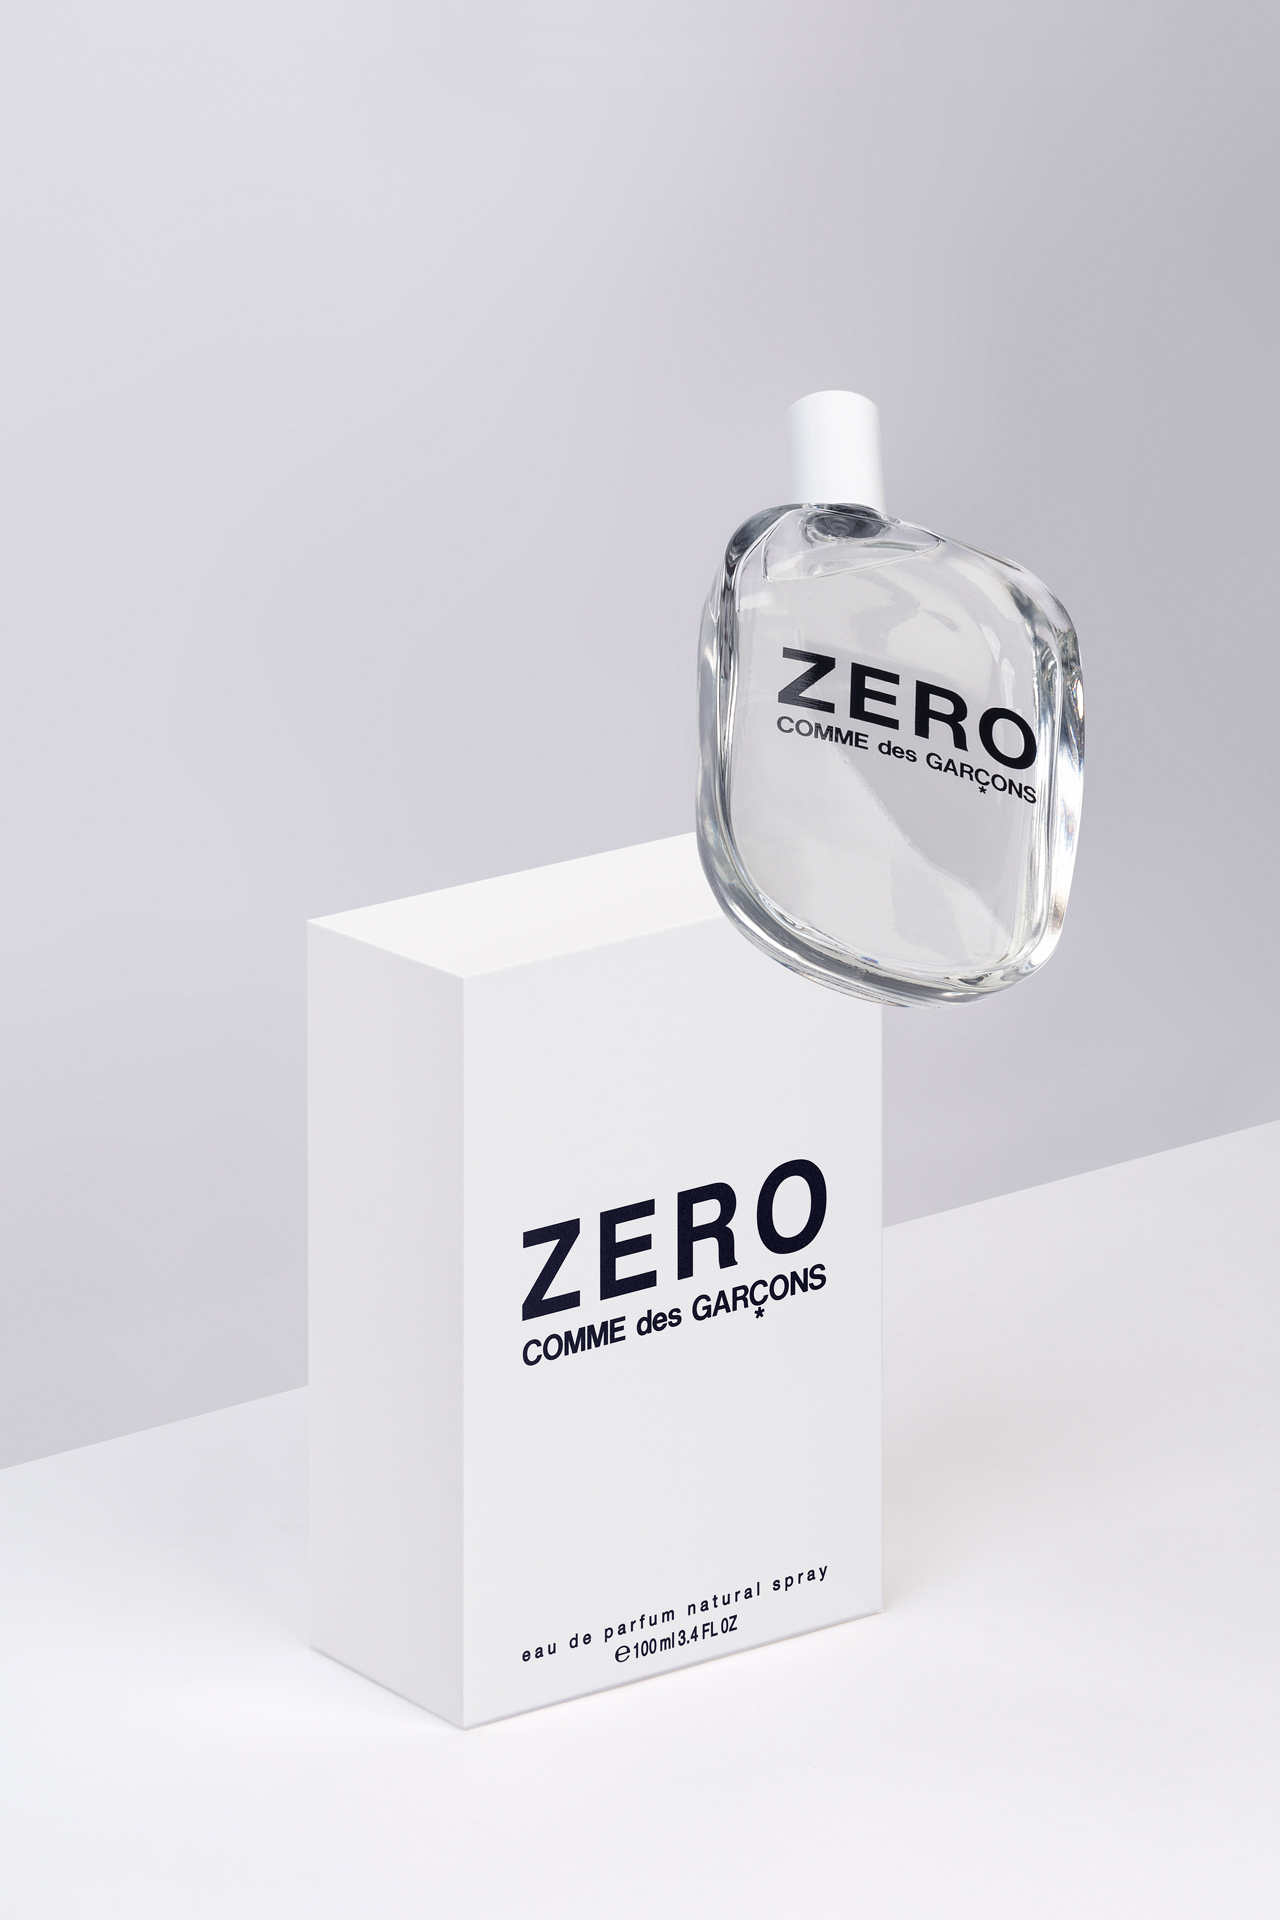 Comme des Garçons ZERO fragrance design